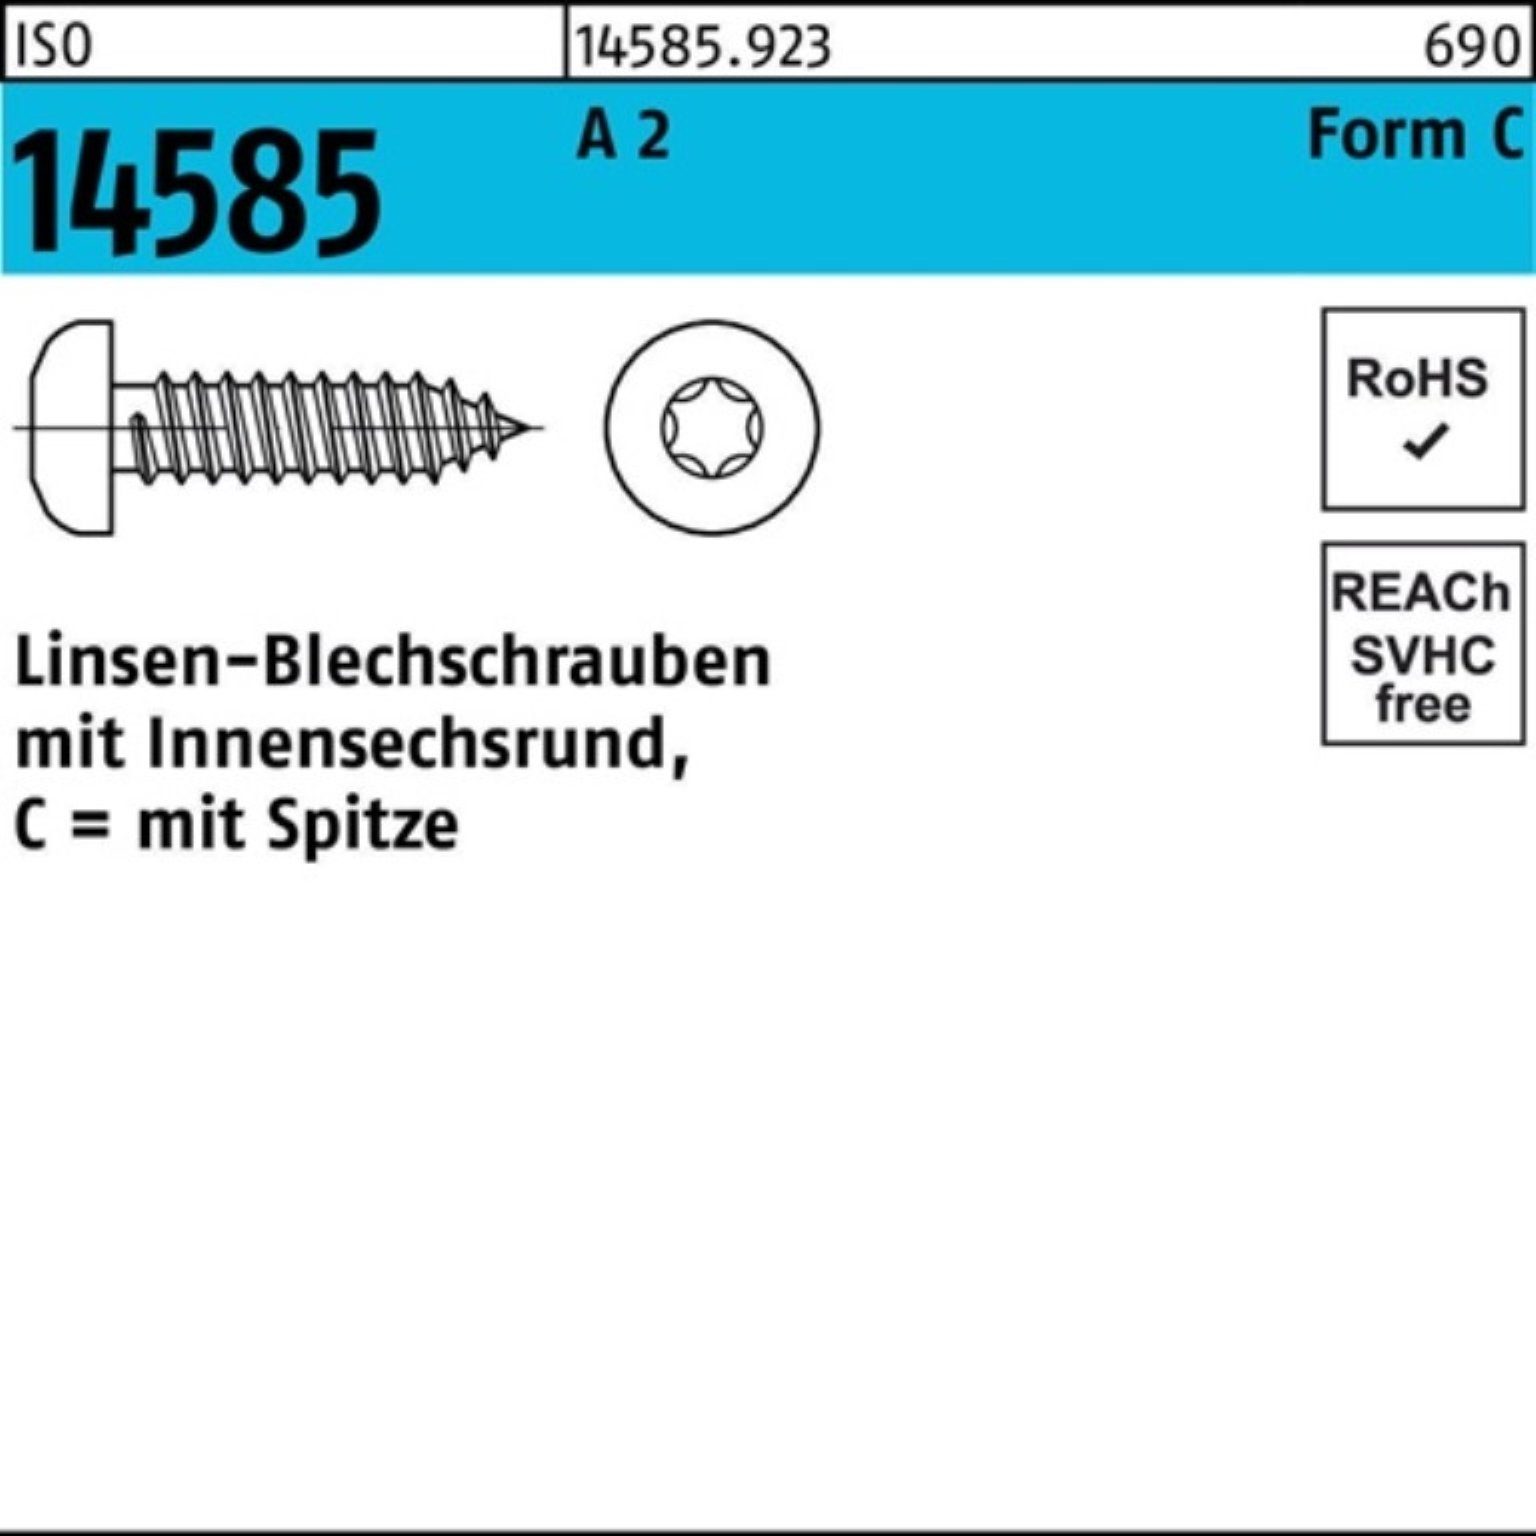 Reyher Blechschraube 500er Pack Linsenblechschraube 2 A ISO 13 14585 500 T25 4,8x -C ISR St